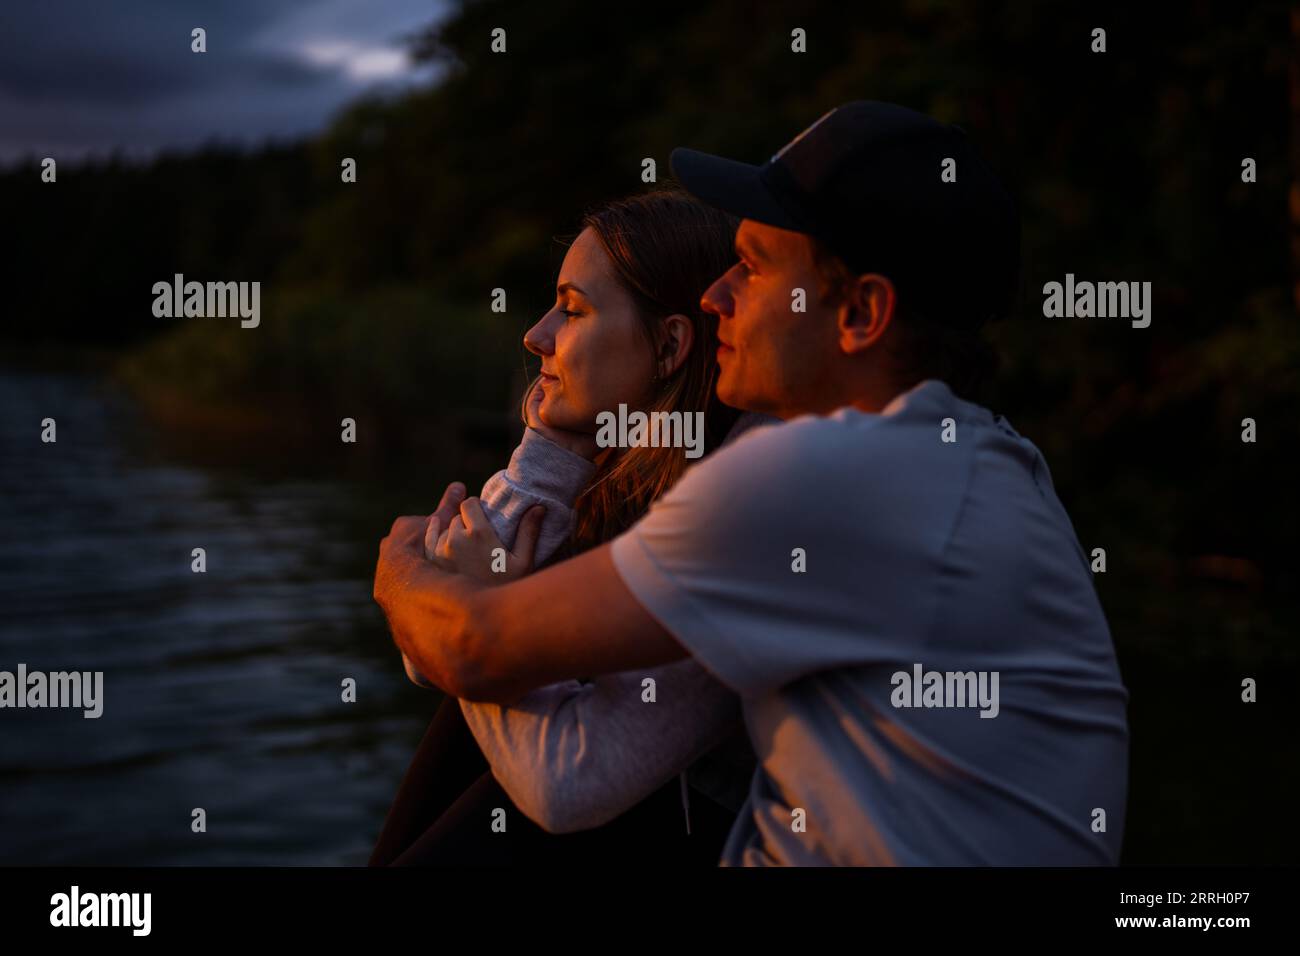 Ein junges kaukasisches Paar, das einen wunderschönen Sonnenuntergang über einem ruhigen See genießt. Stockfoto